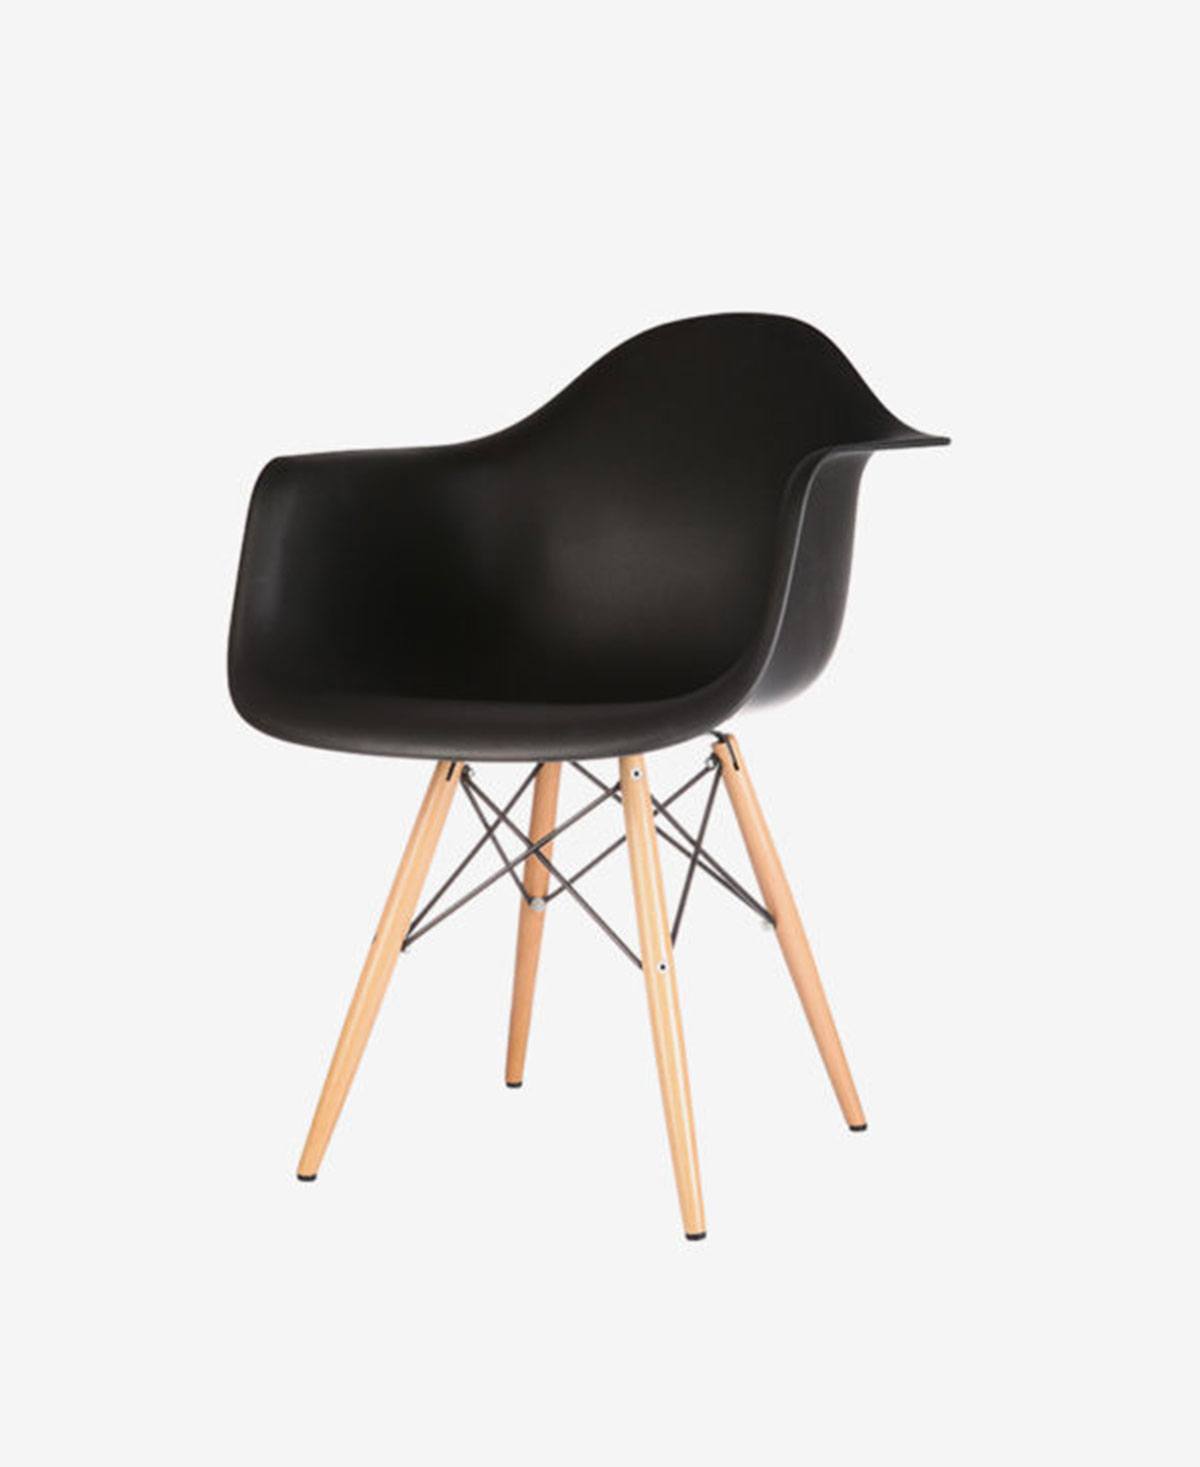 Creative black chair